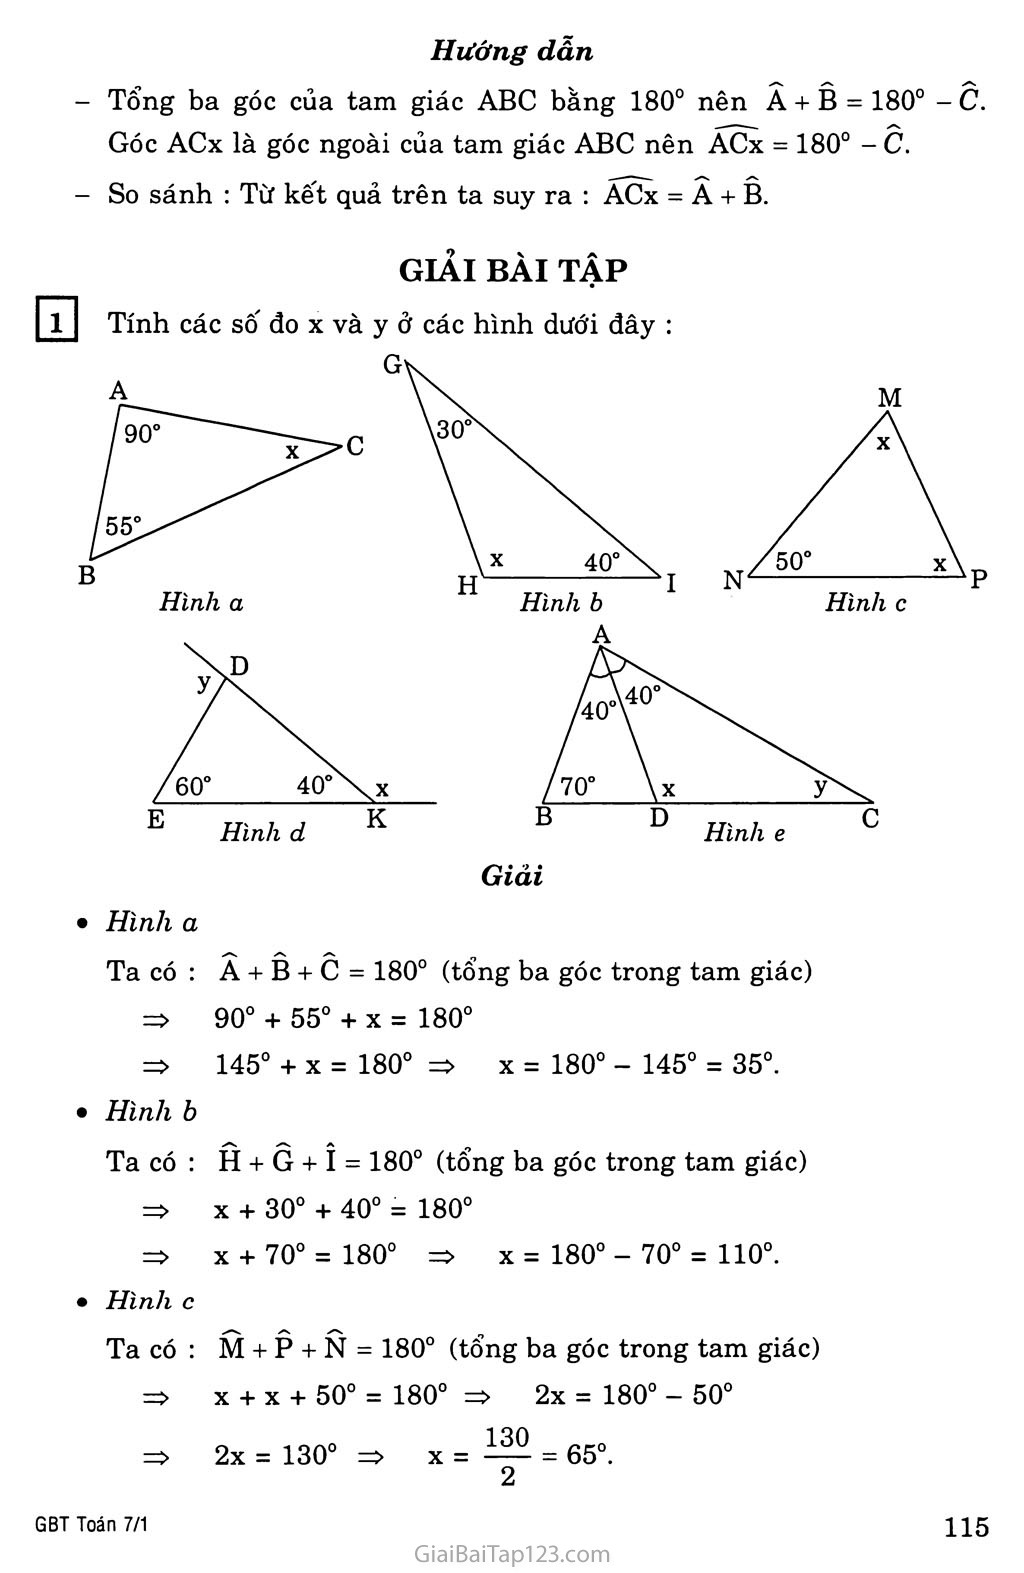 §1. Tổng ba góc của một tam giác trang 2